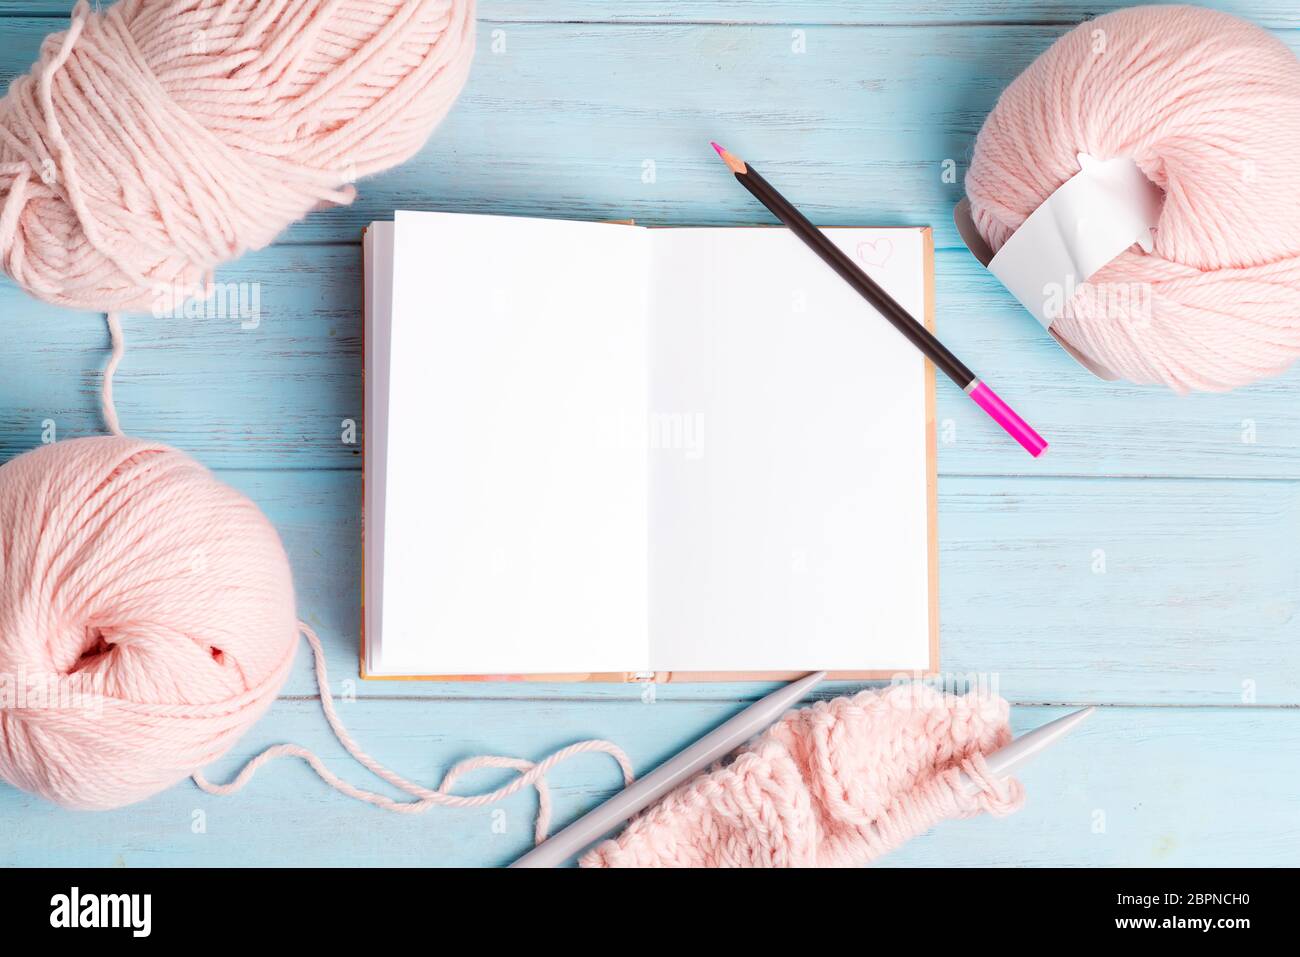 Toile de fond créative avec laine à enroulement rose pastel et carnet en papier vierge ouvert pour des notes et un motif à tricoter sur un fond de bois bleu clair Banque D'Images